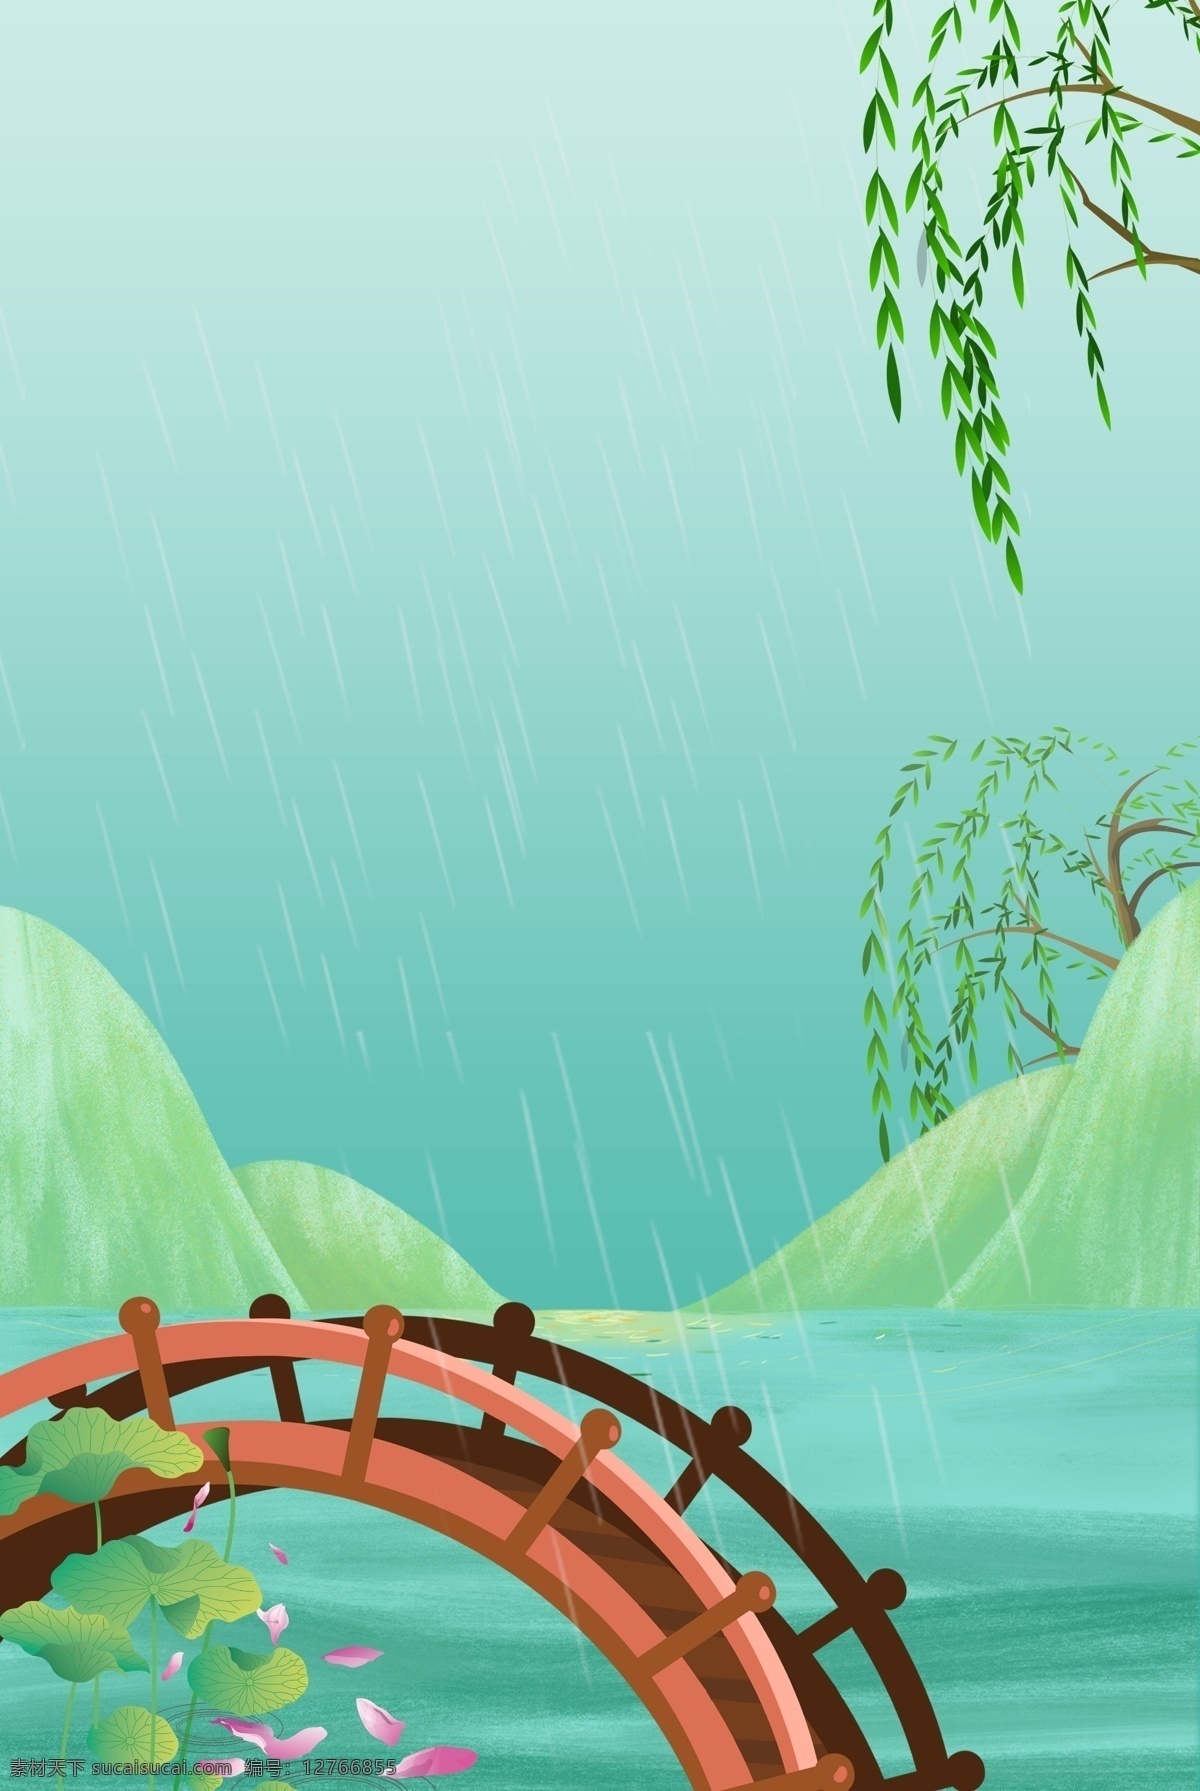 二十四节气 雨水 创意 合成 背景 雨水节气 简约 卡通 柳树 绿色 绿地